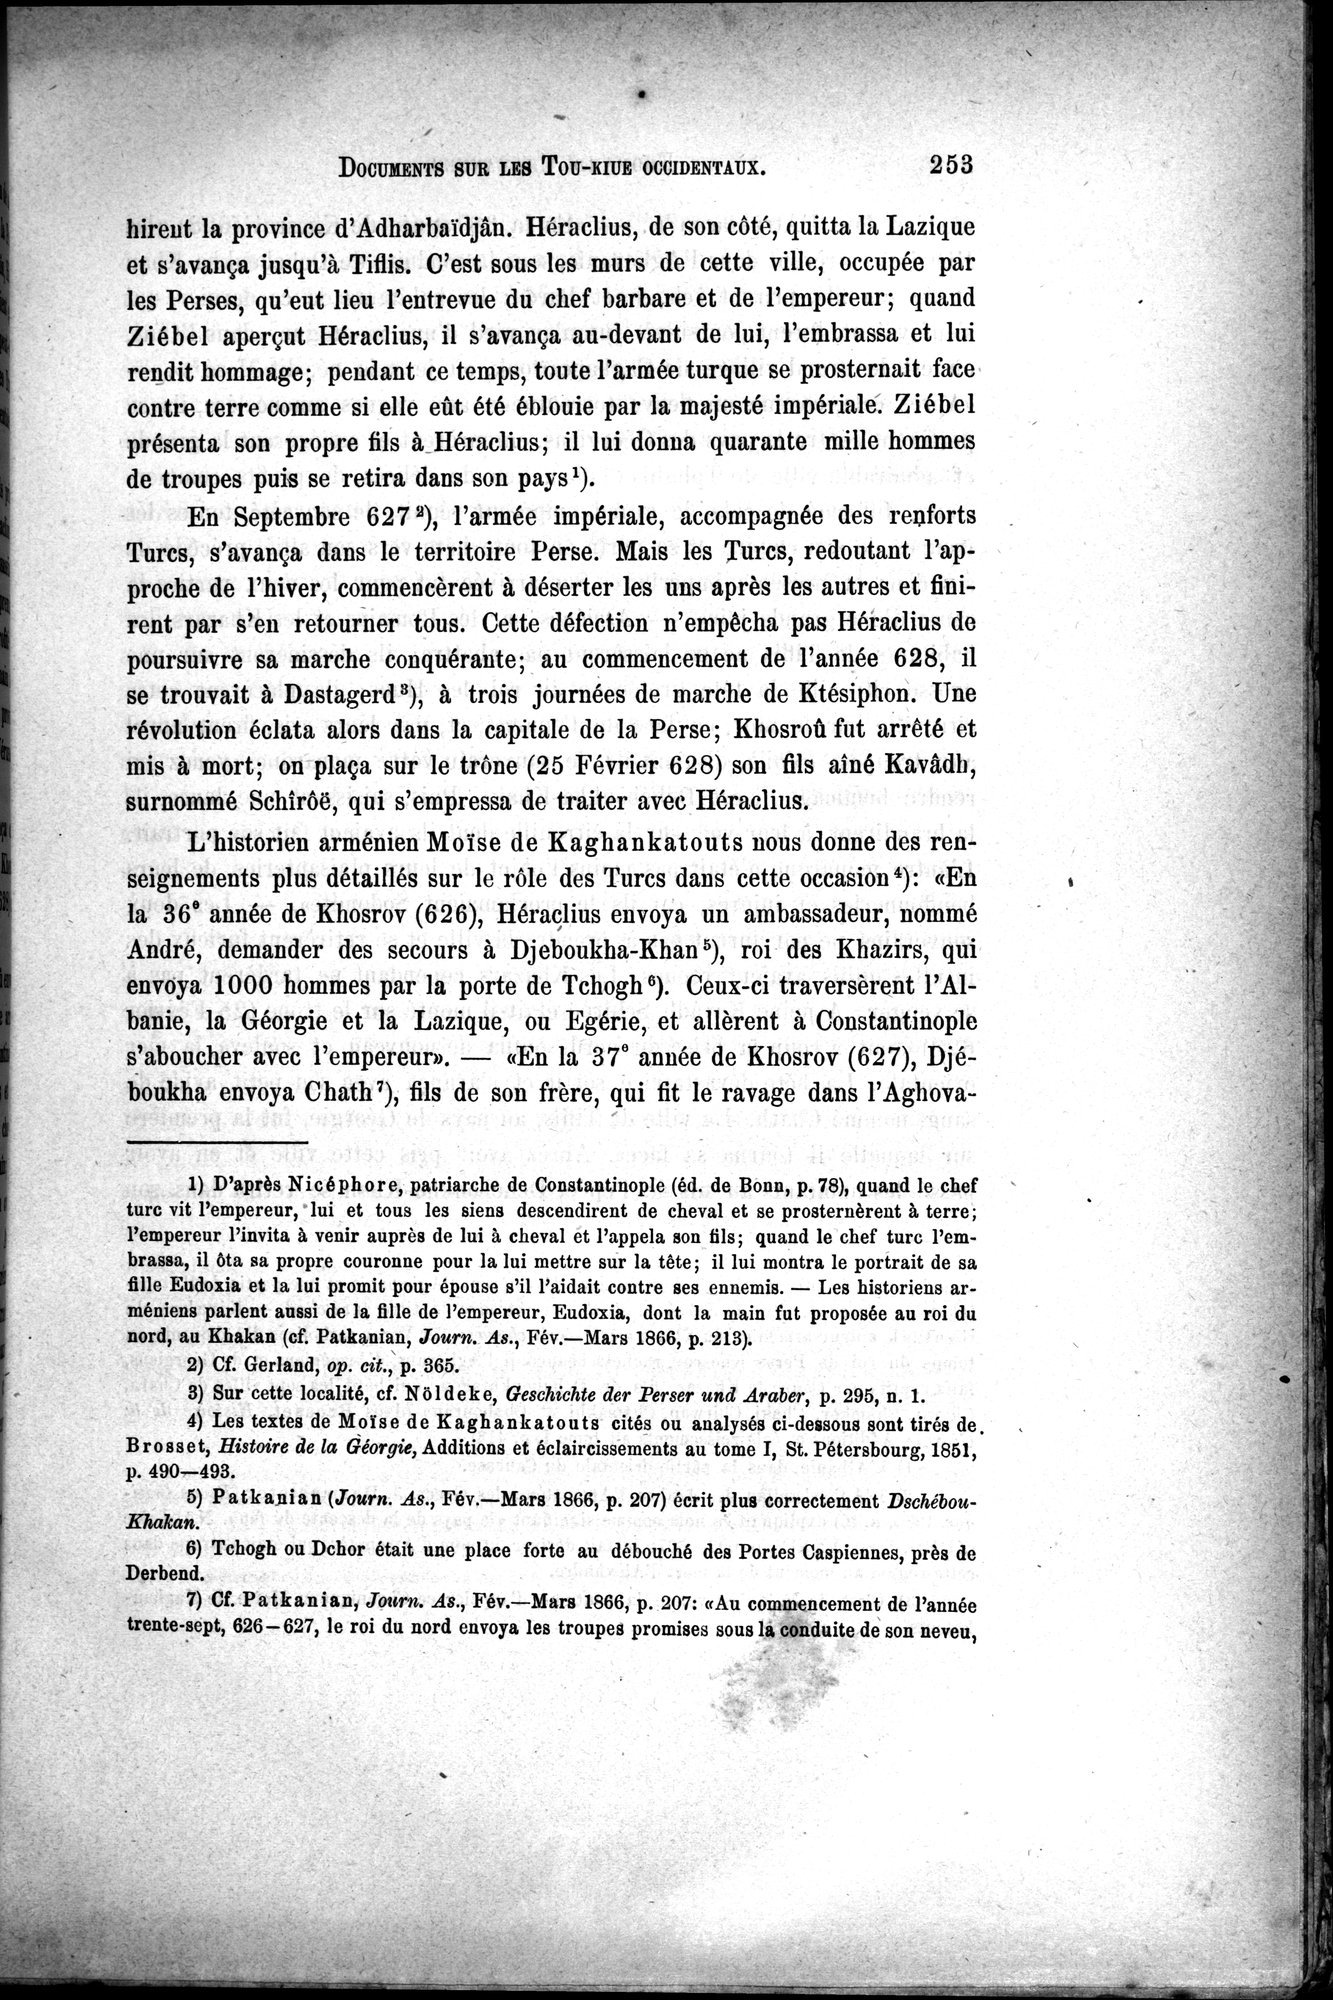 Documents sur les Tou-kiue (Turcs) occidentaux : vol.1 / Page 263 (Grayscale High Resolution Image)